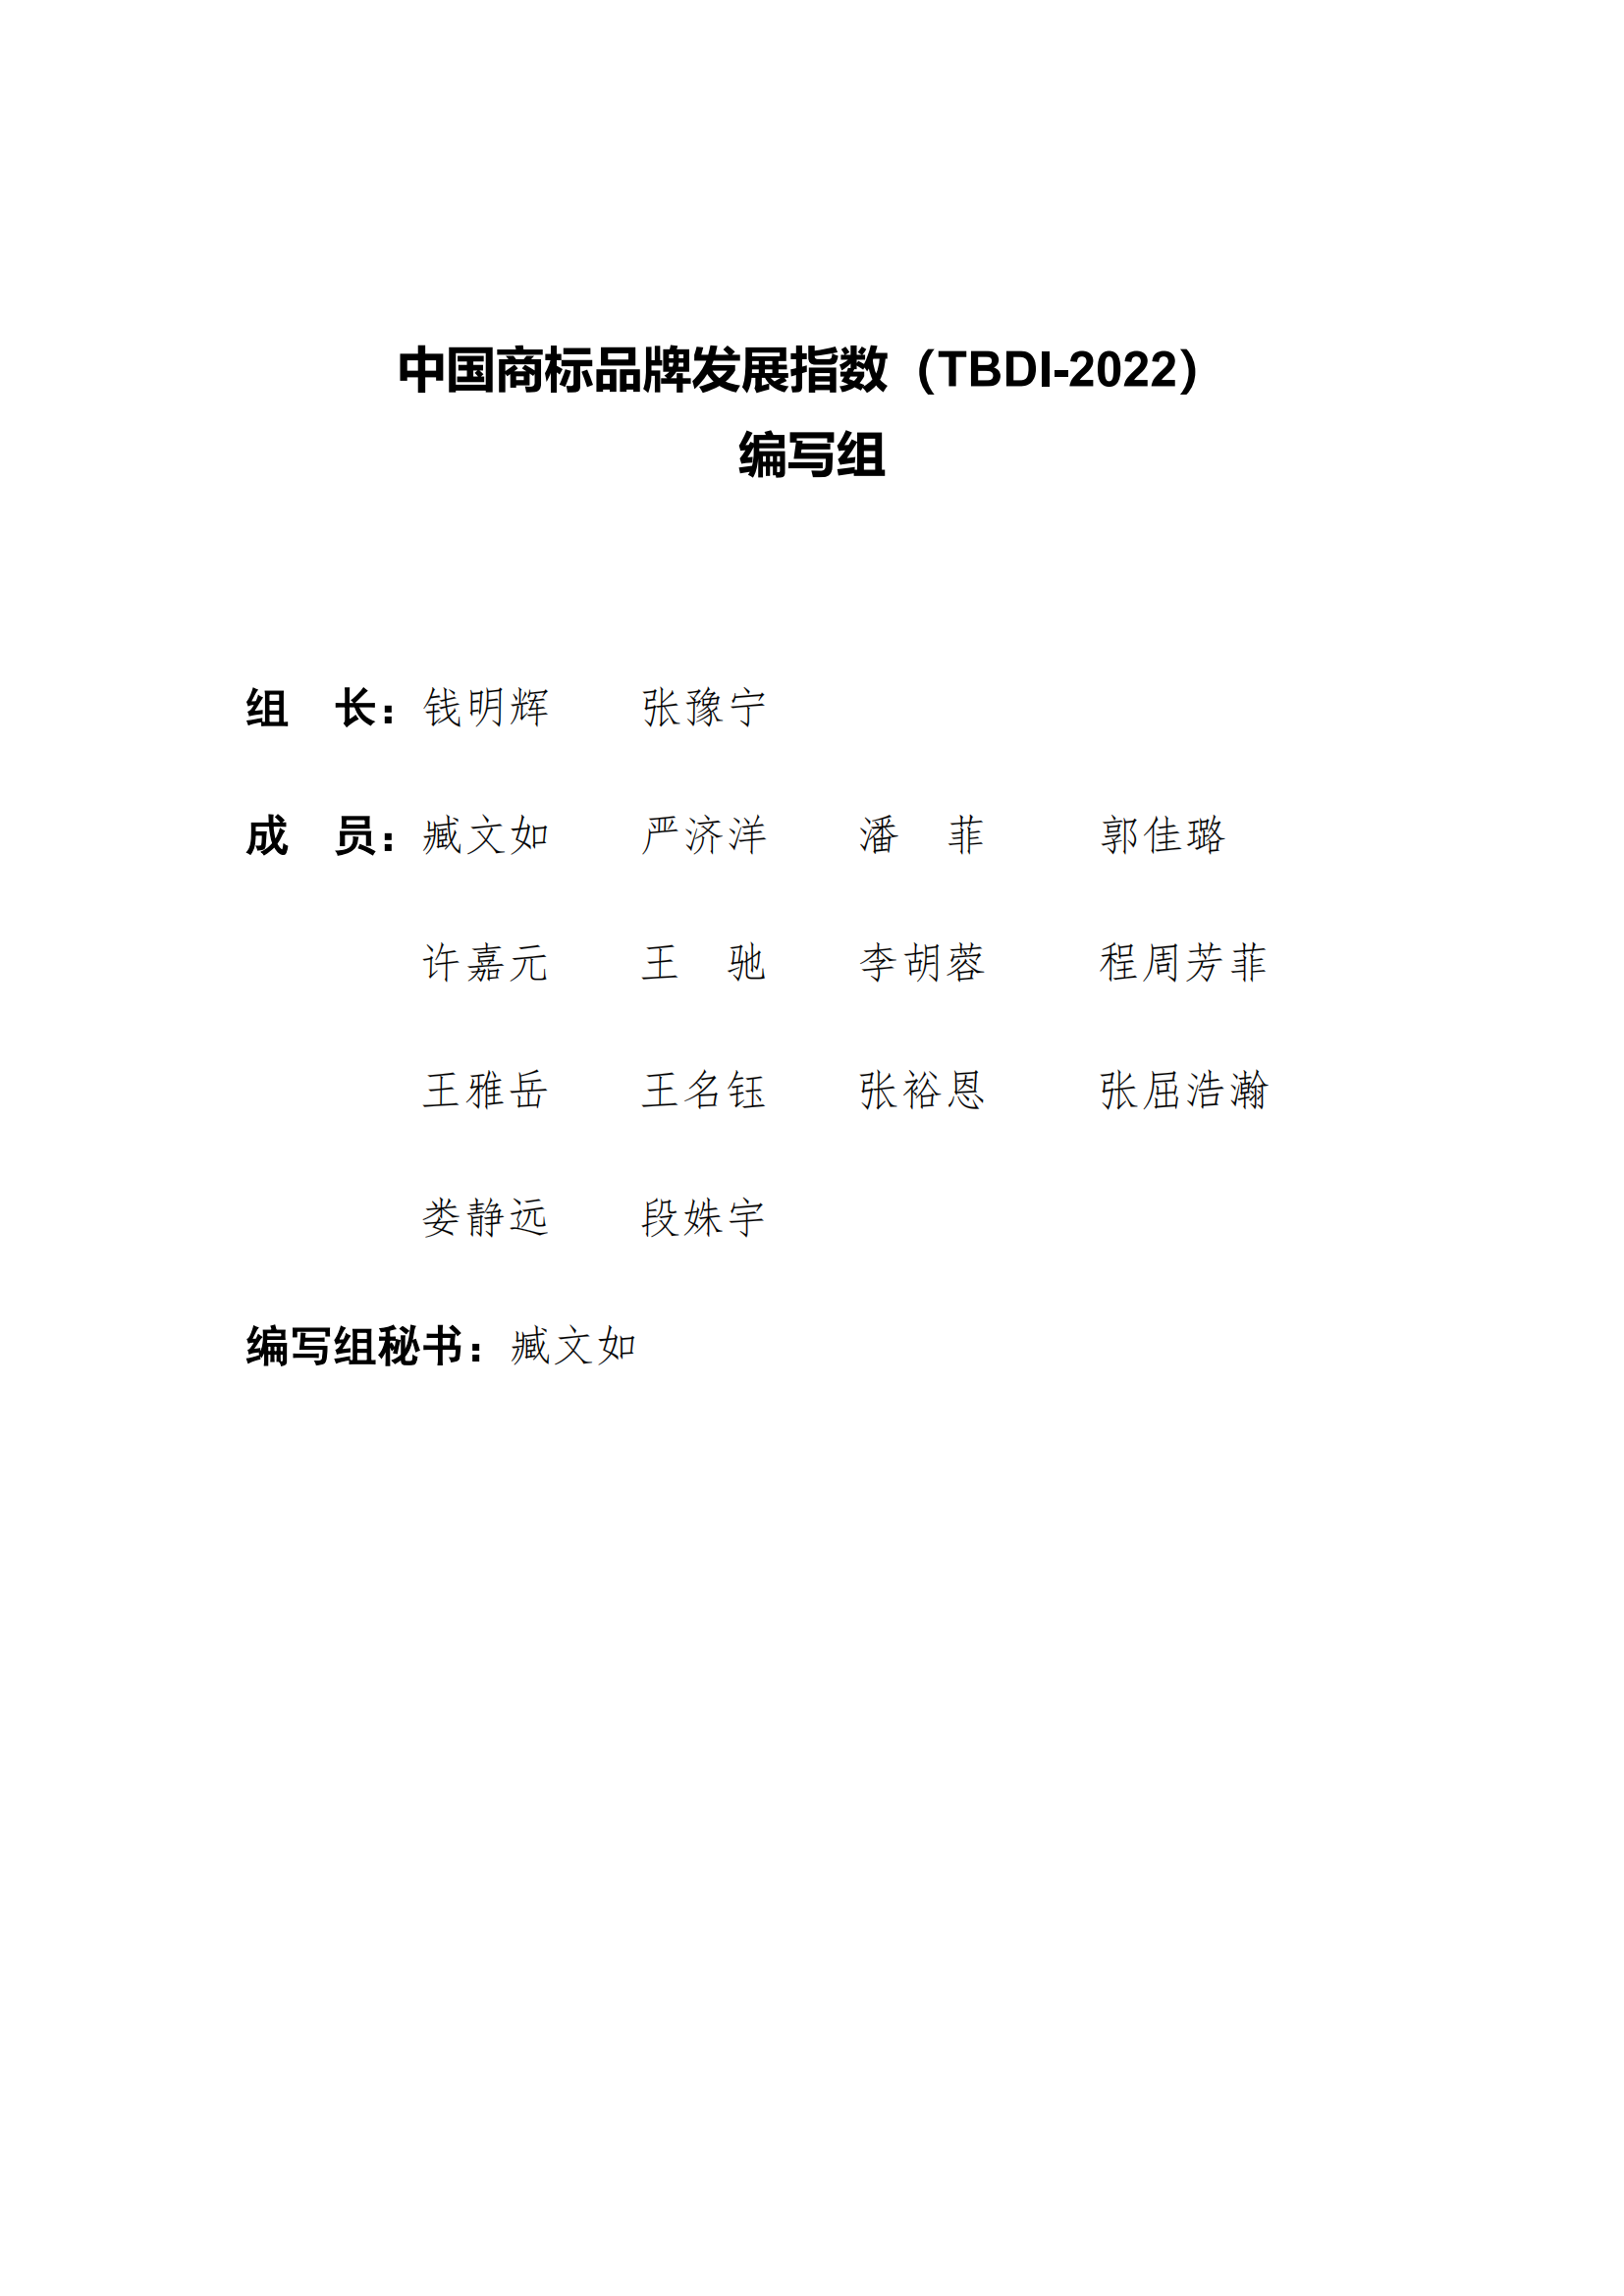 《中国商标品牌发展指数（2022）》发布